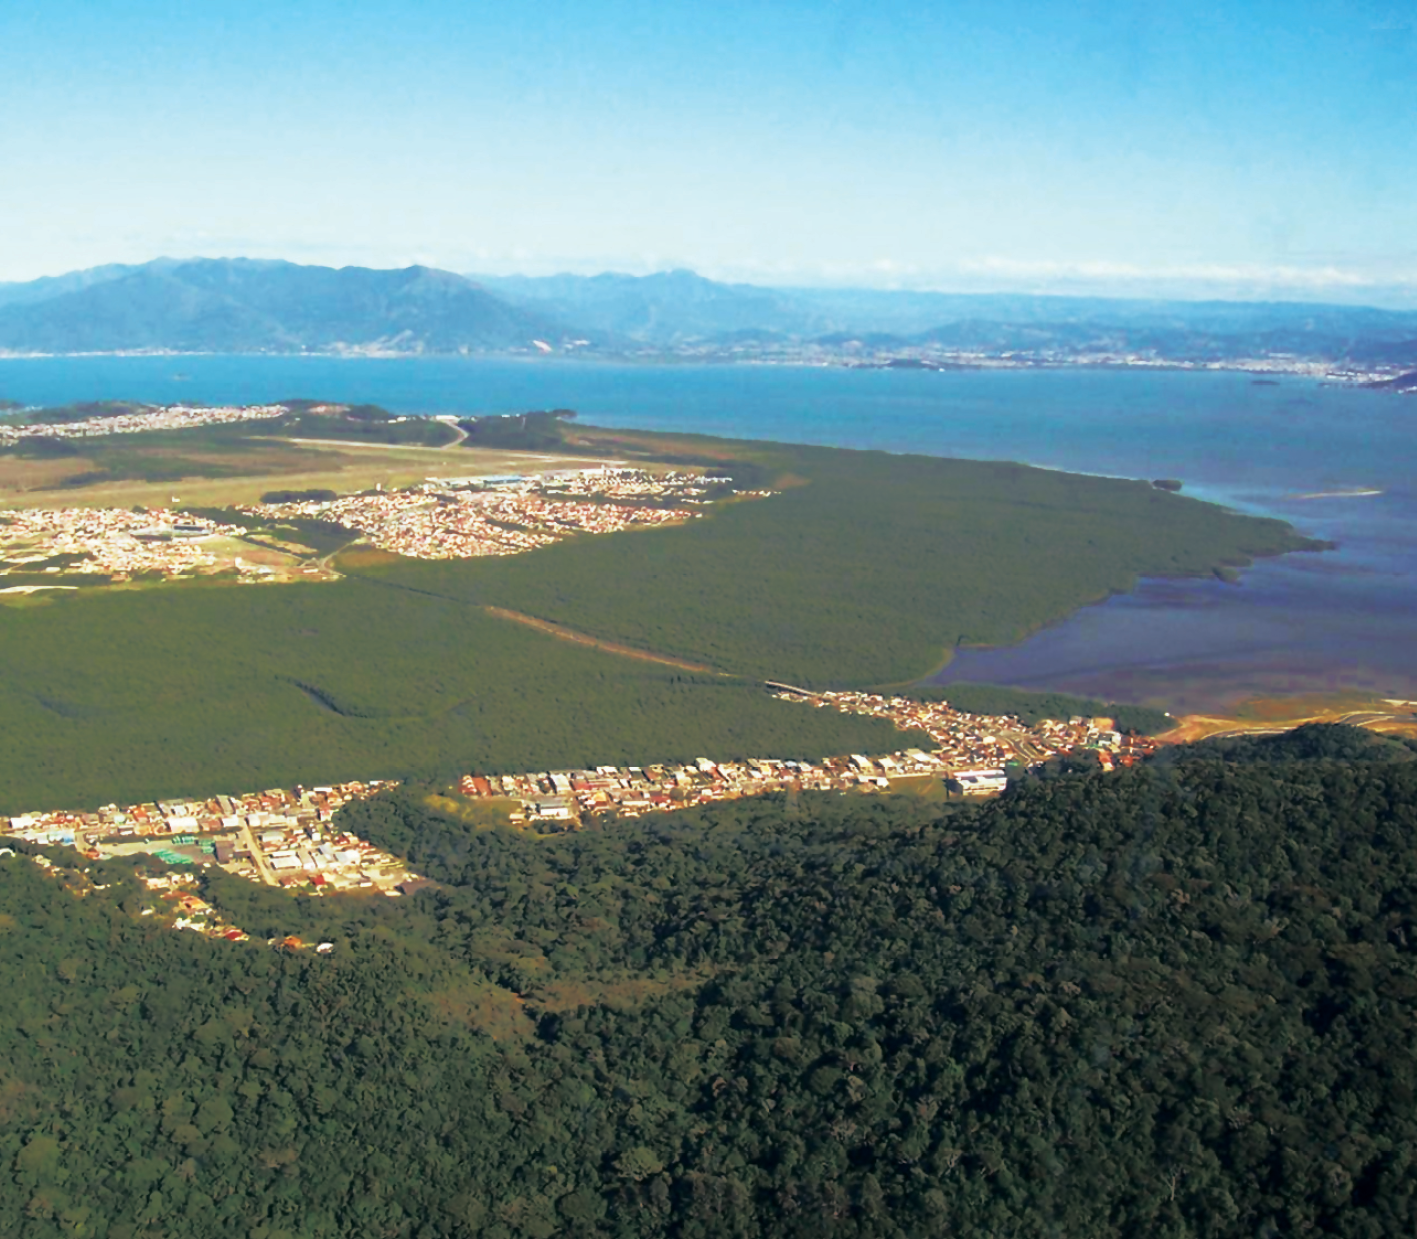 Fotografia. Vista do alto mostrando uma parte da ilha de Santa Catarina, com muita vegetação e algumas construções esparsas. Na parte de cima da fotografia aparece o mar (a Baia Sul). Ao fundo, na parte de cima, vista do continente com alguns morros em destaque.